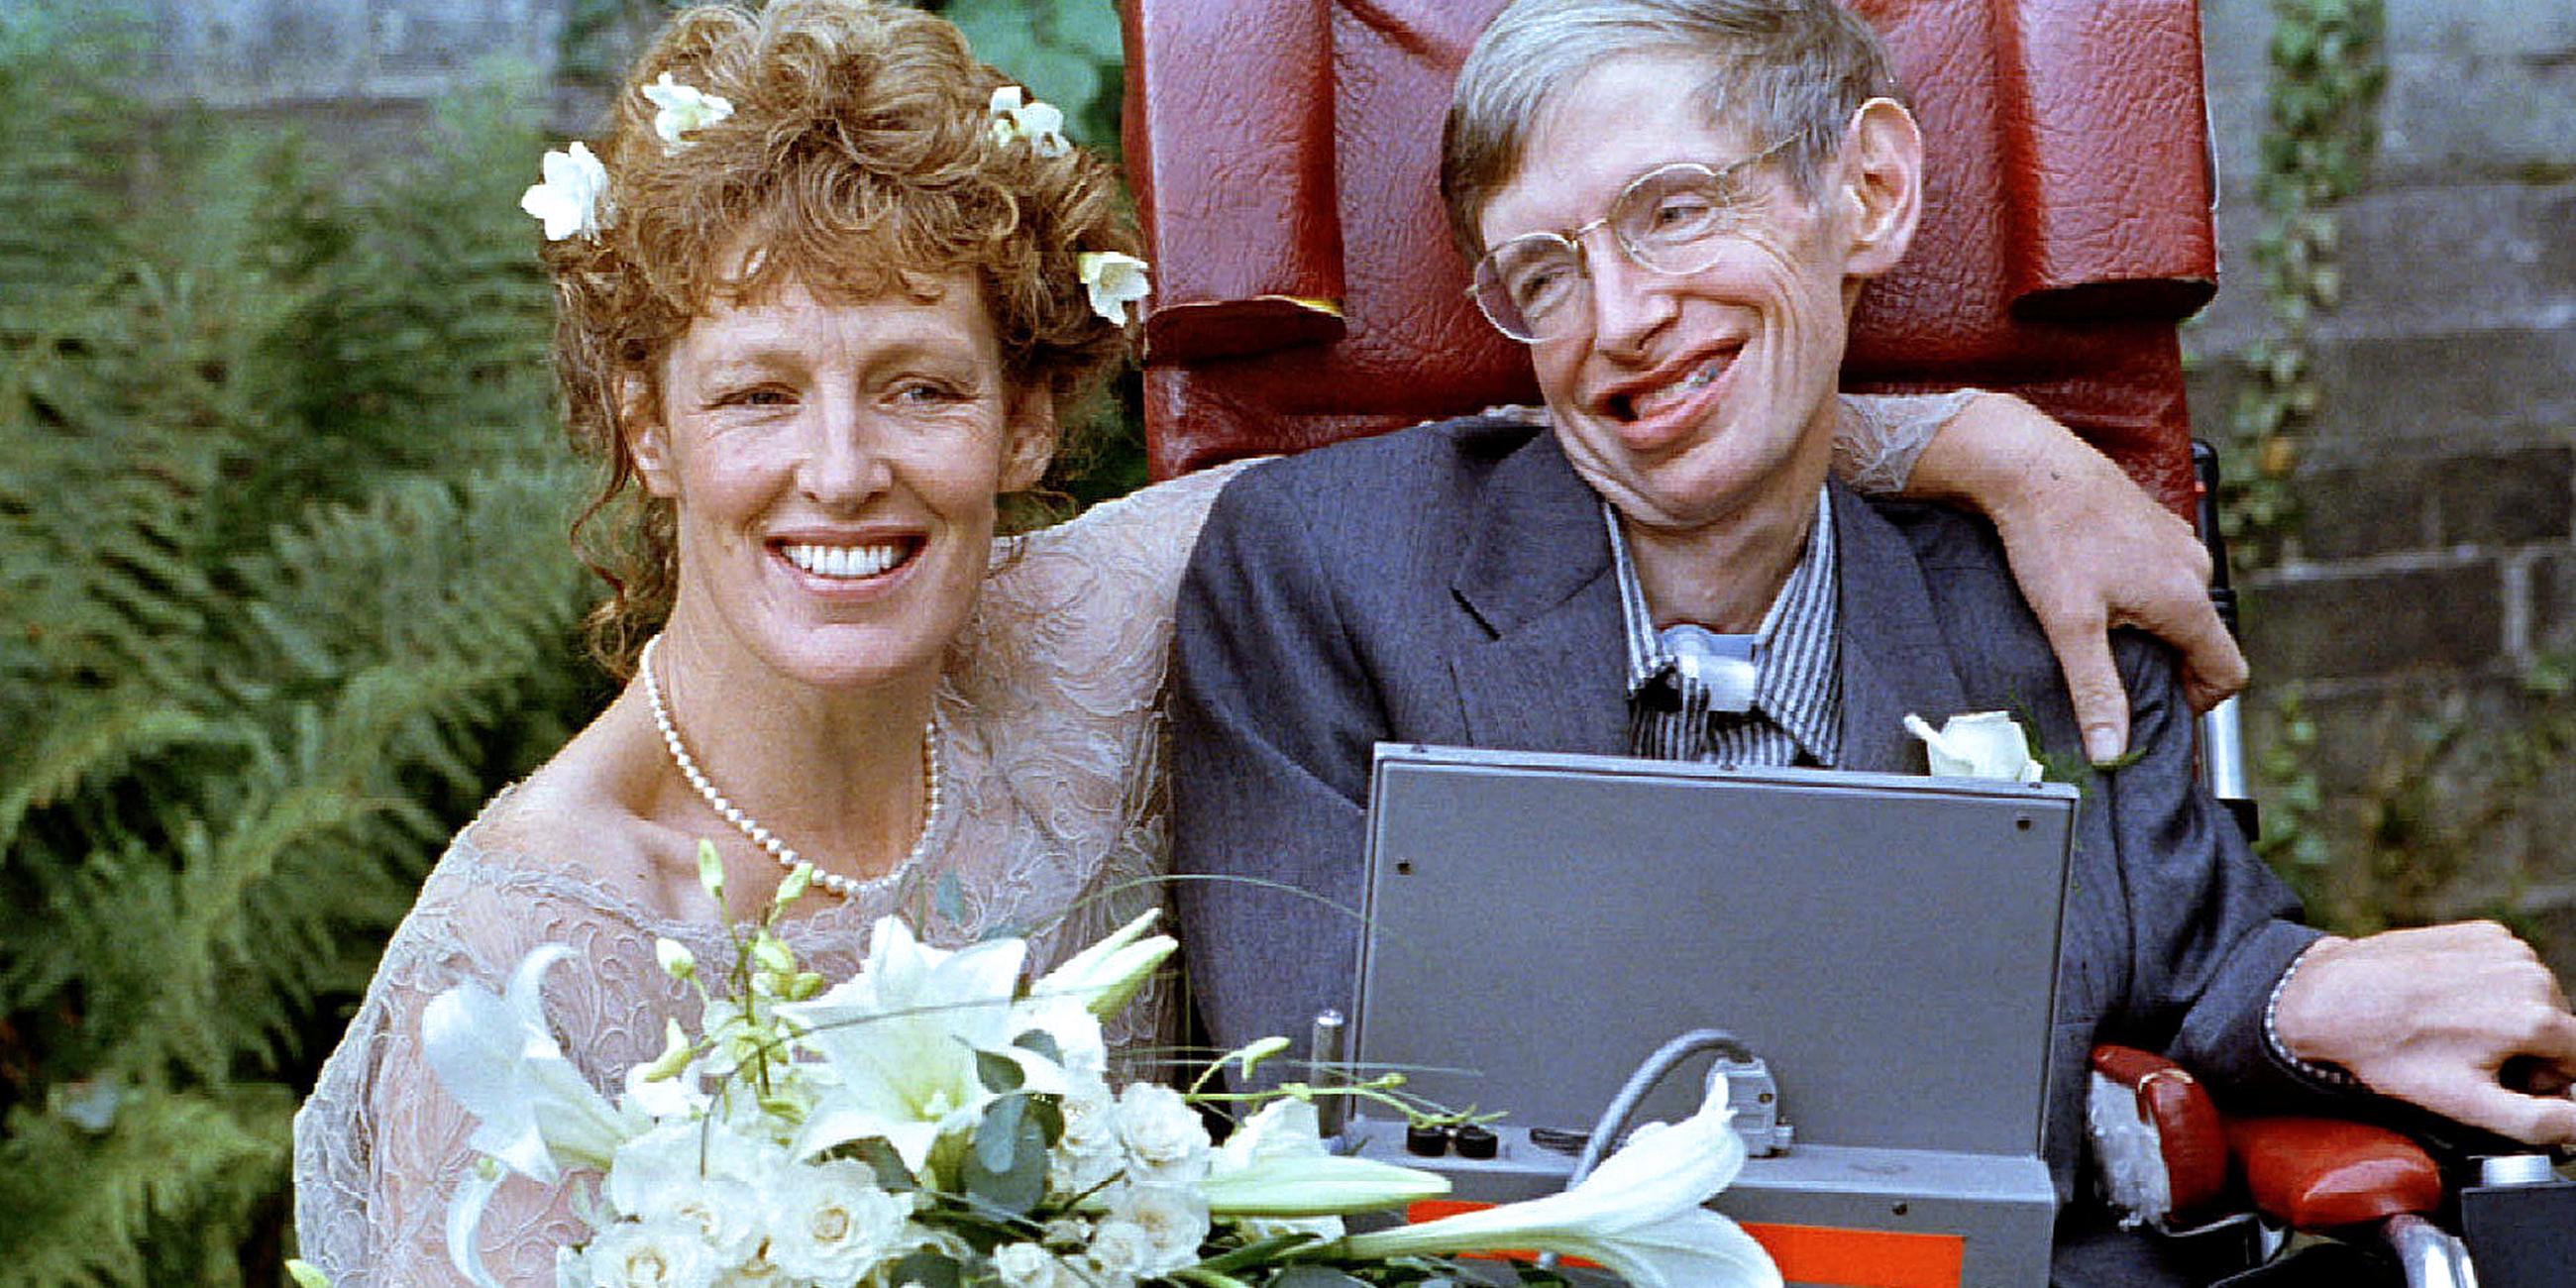 Archiv: Hochzeitsfoto von Stephen Hawking und seiner Ehefrau Elain Mason, aufgenommen am 16.09.1995 